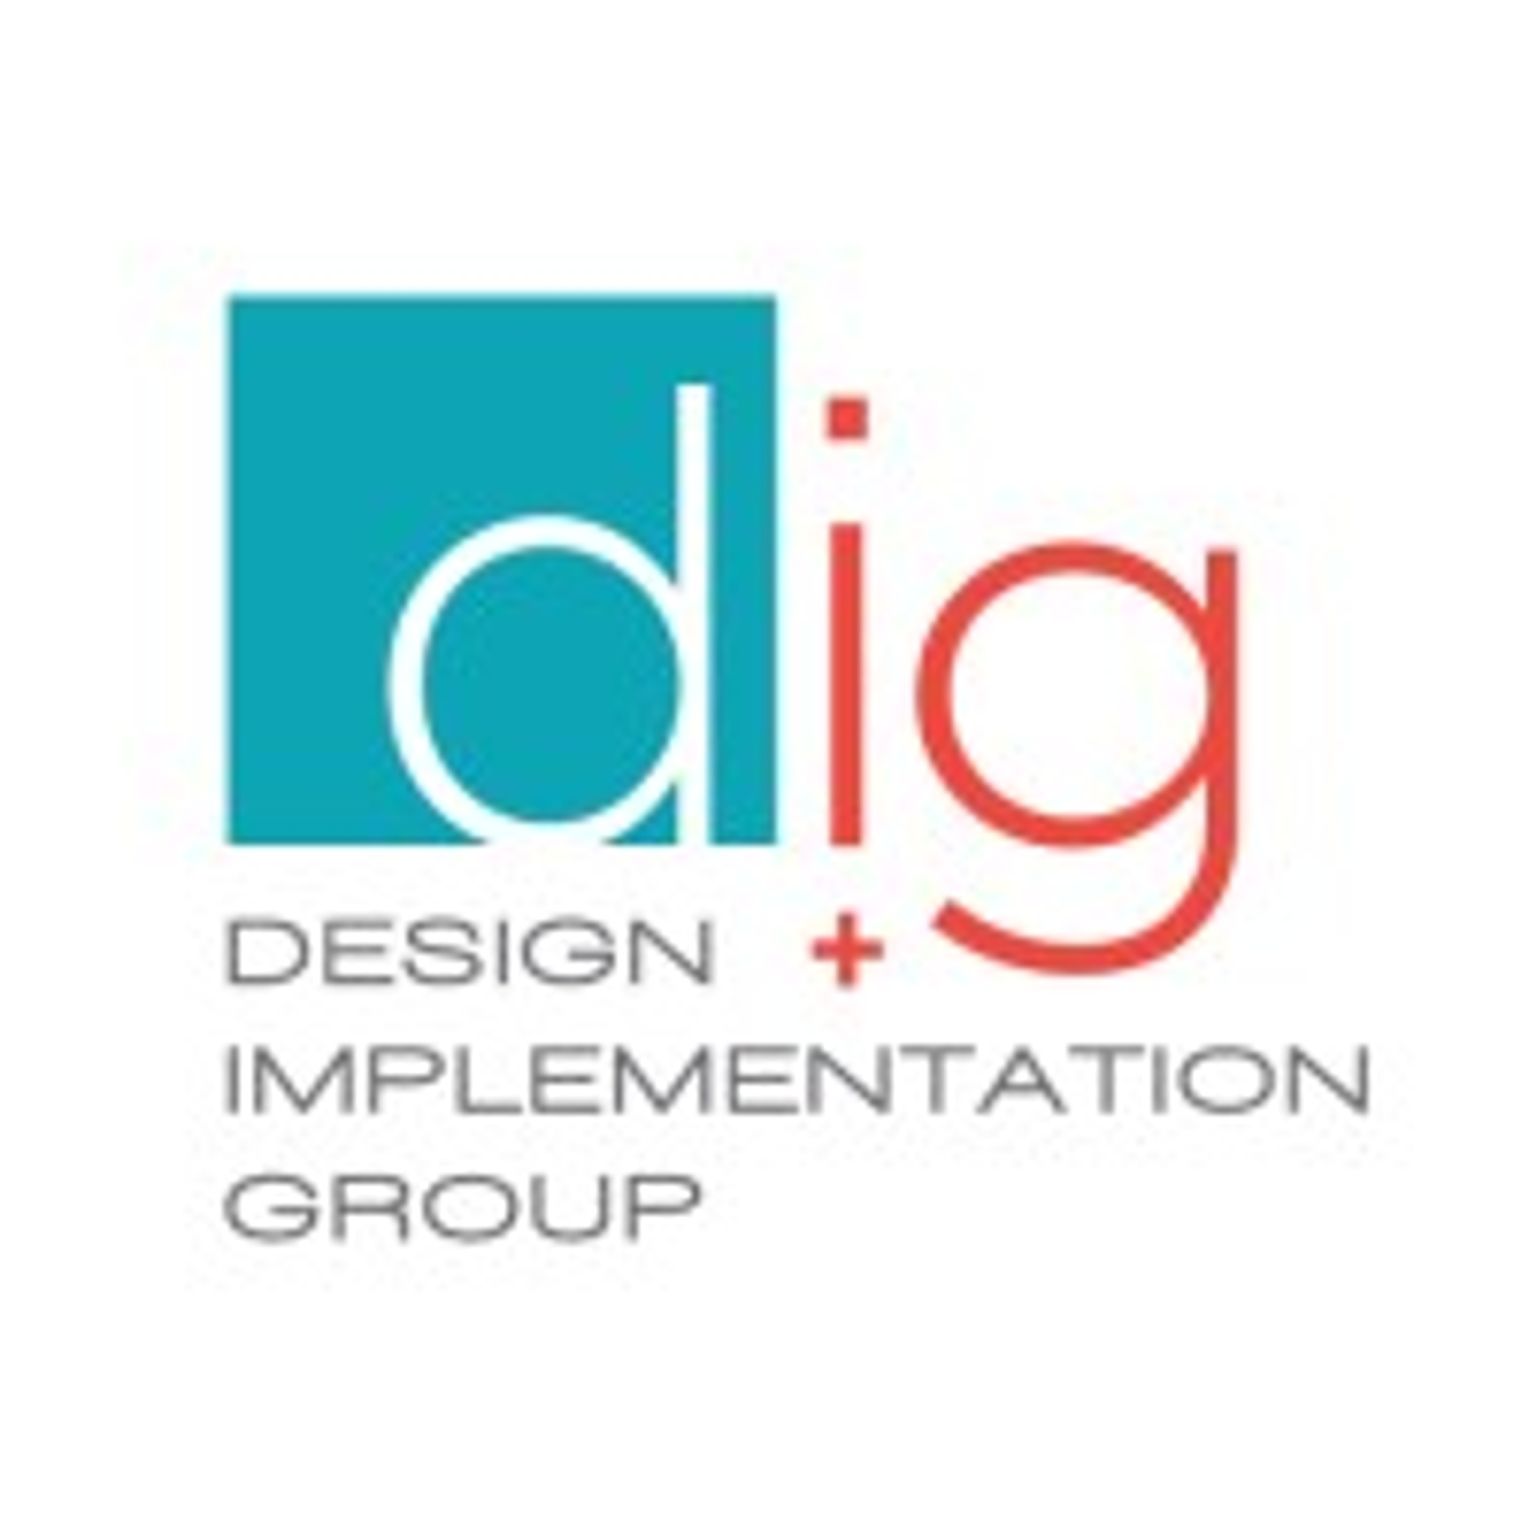 Design Implementation Group